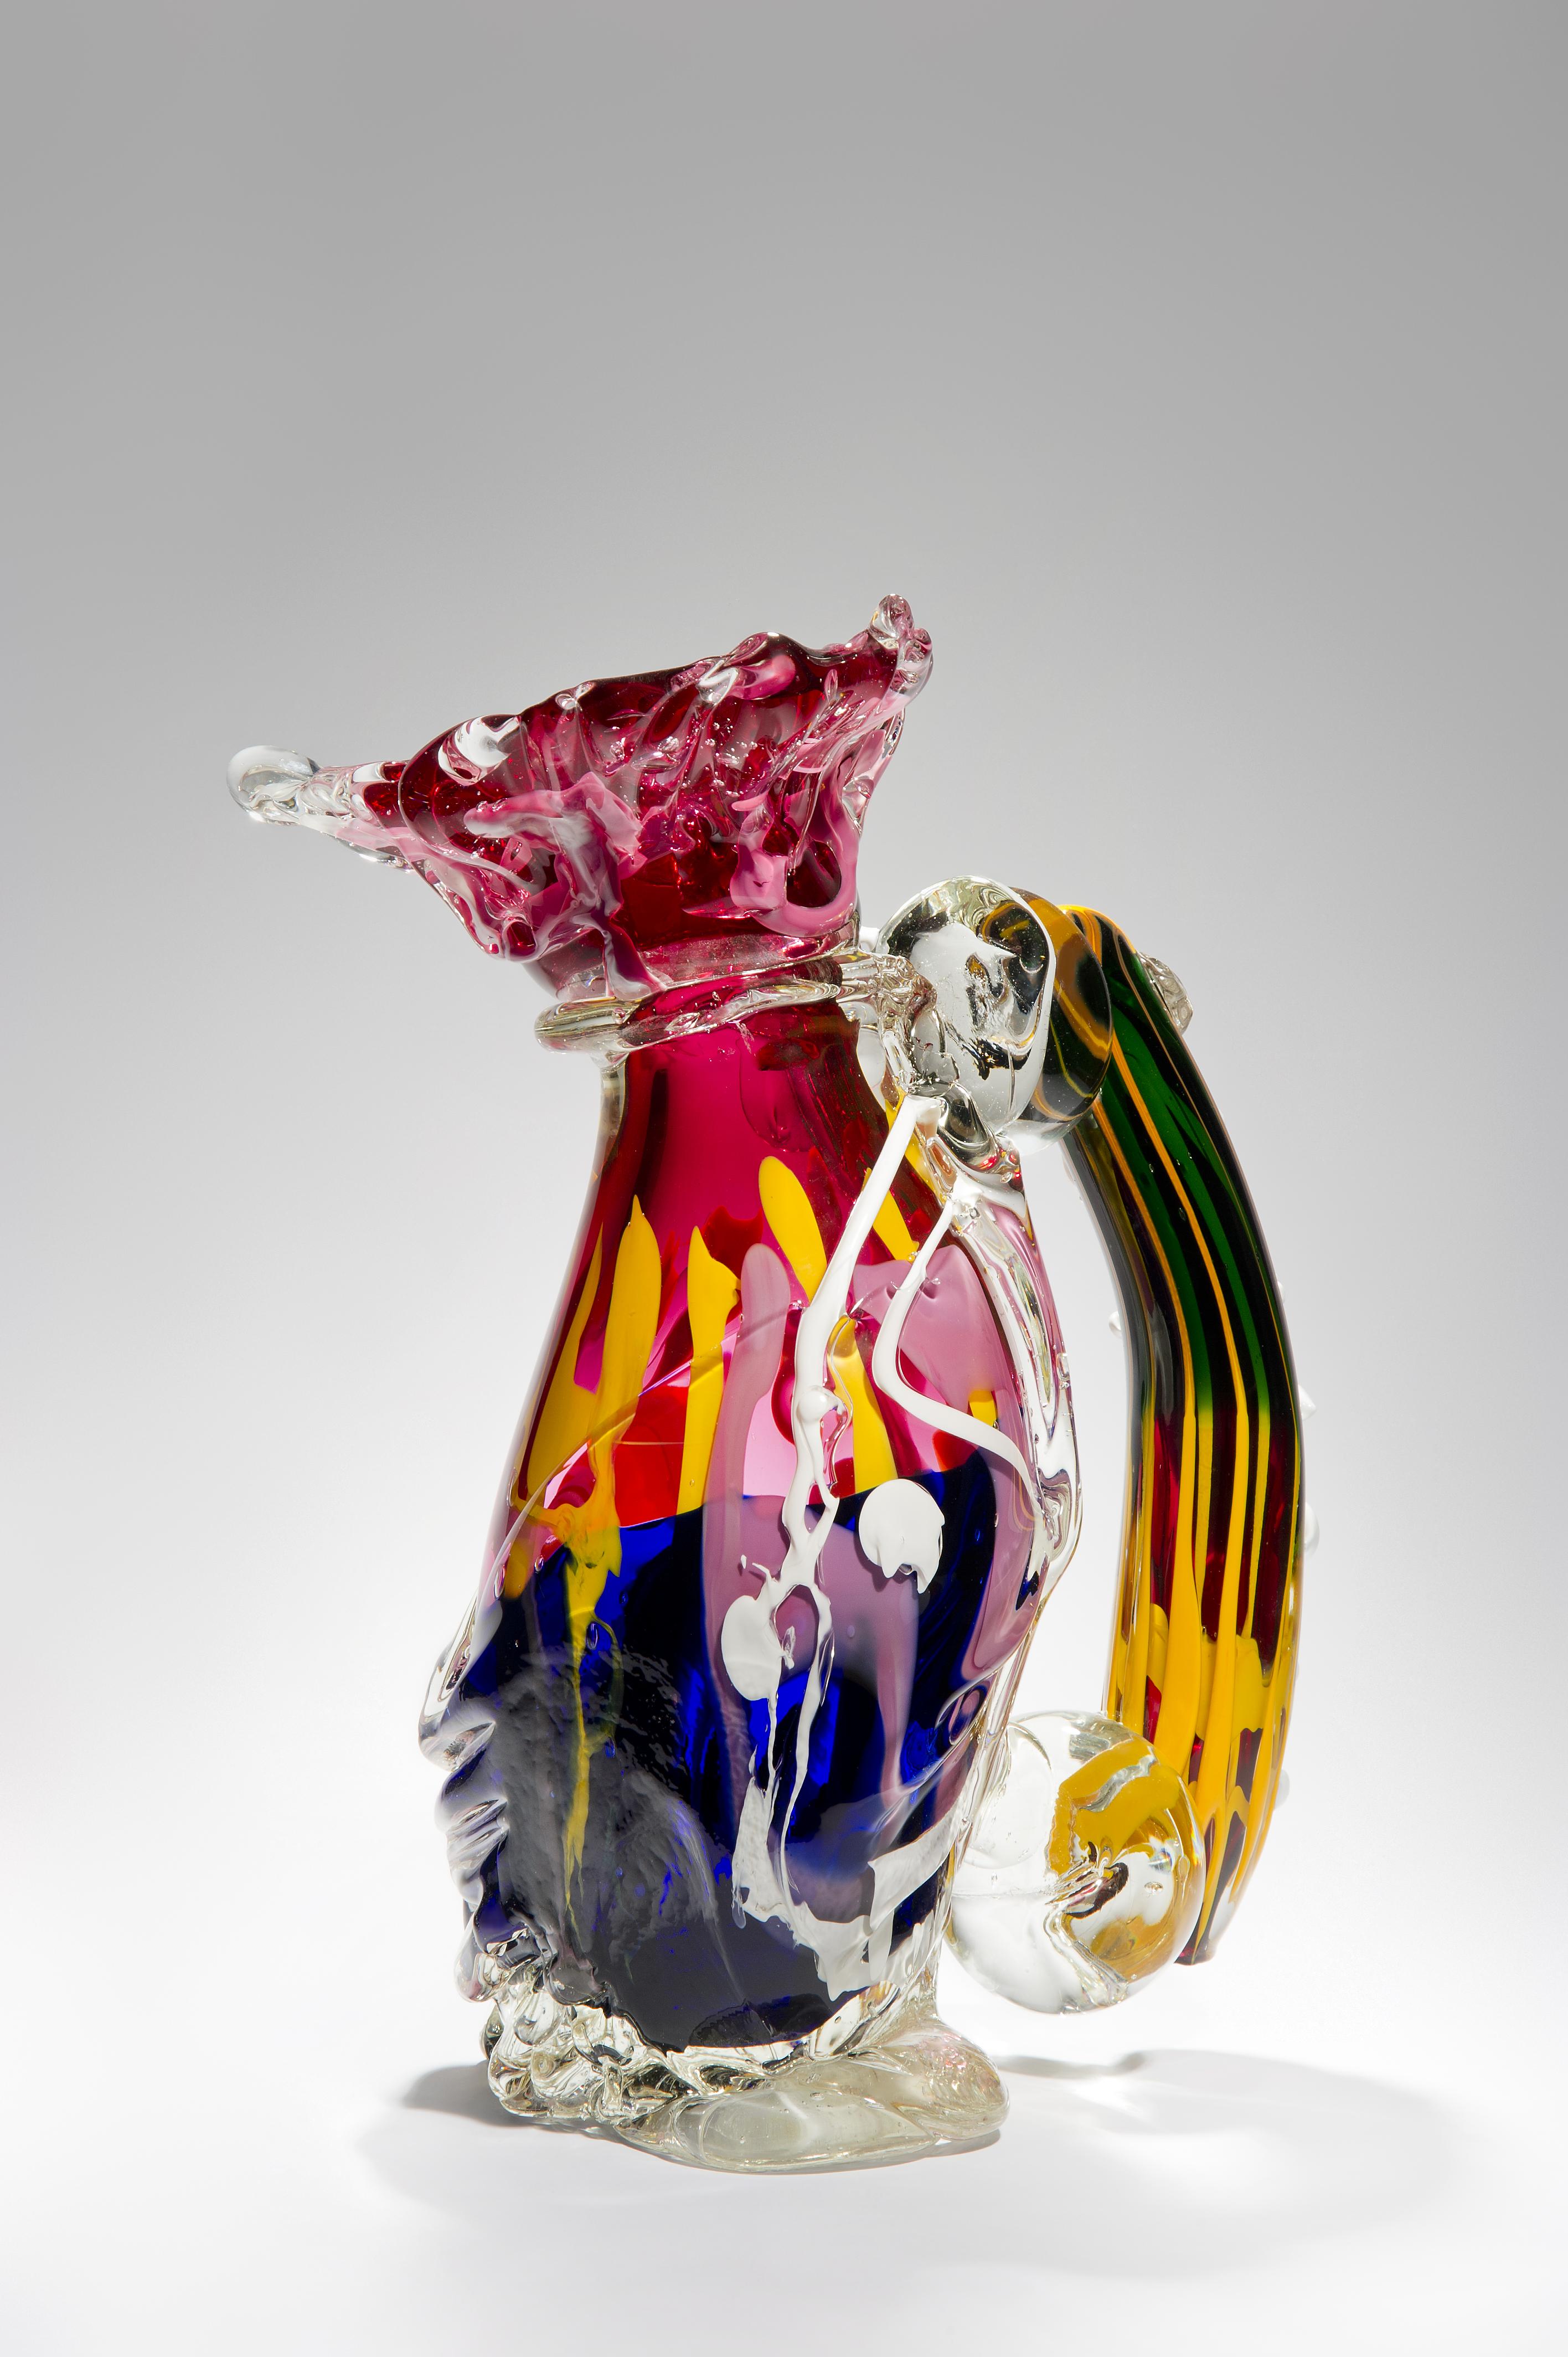 I was S, ist eine einzigartige klare und mehrfarbige Glasskulptur des schwedischen Künstlers Fredrik Nielsen. Der Künstler modelliert sein Glas buchstäblich freihändig, um diese monumentalen Kunstwerke zu schaffen.

Nielsens überwiegend